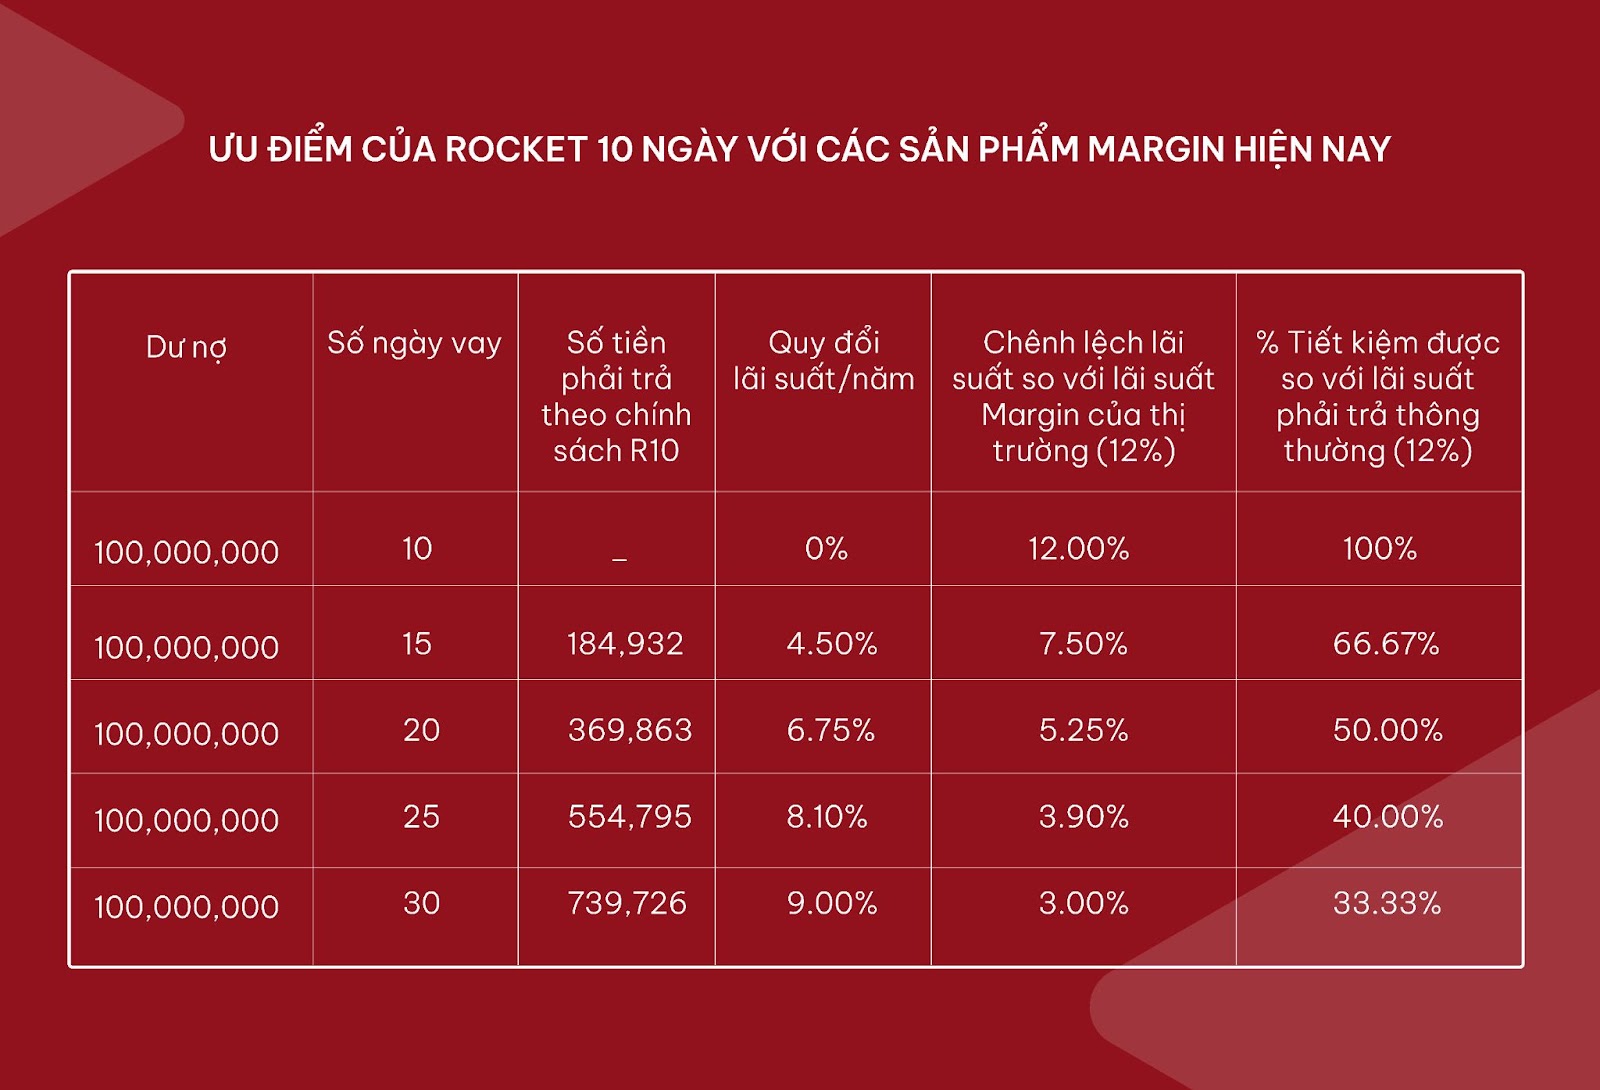 Ưu điểm của Rocket 10 ngày so với thị trường